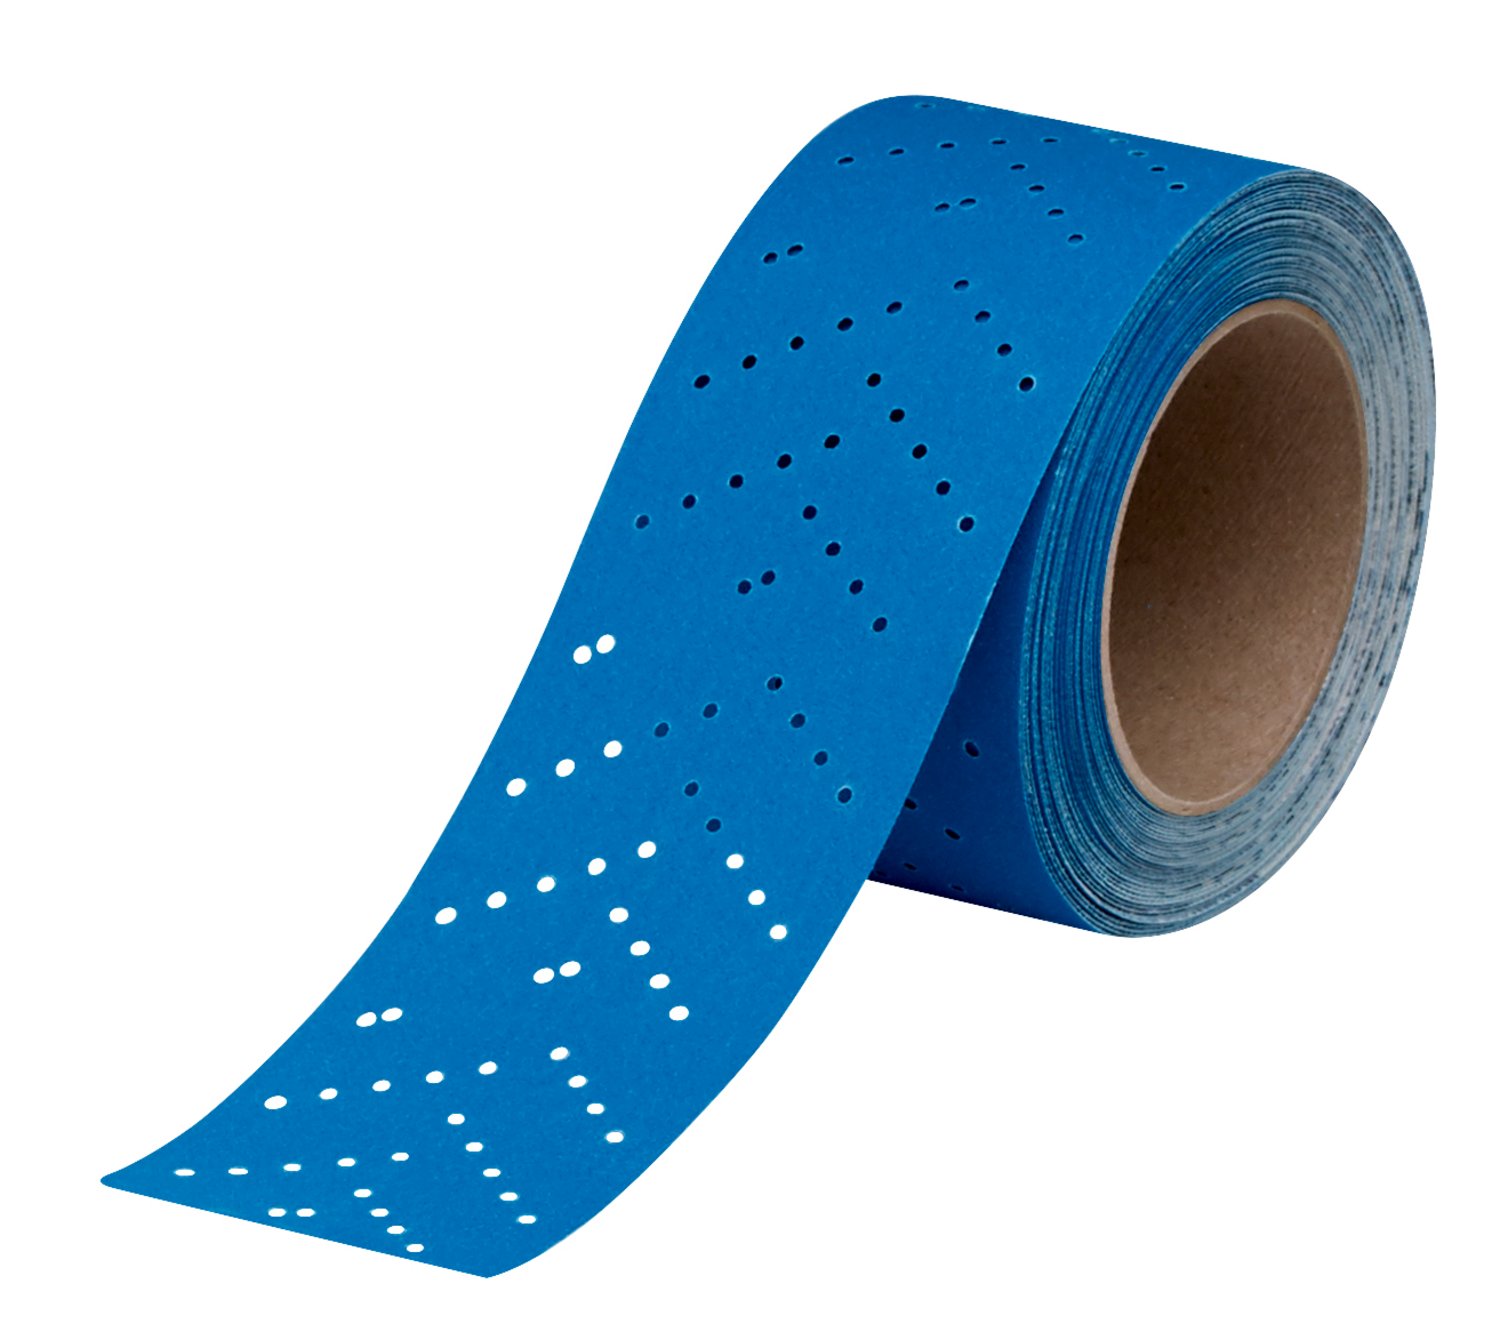 7100091039 - 3M Hookit Blue Abrasive Sheet Roll Multi-hole, 36190, 150, 2.75 in x
13 y, 4 cartons per case